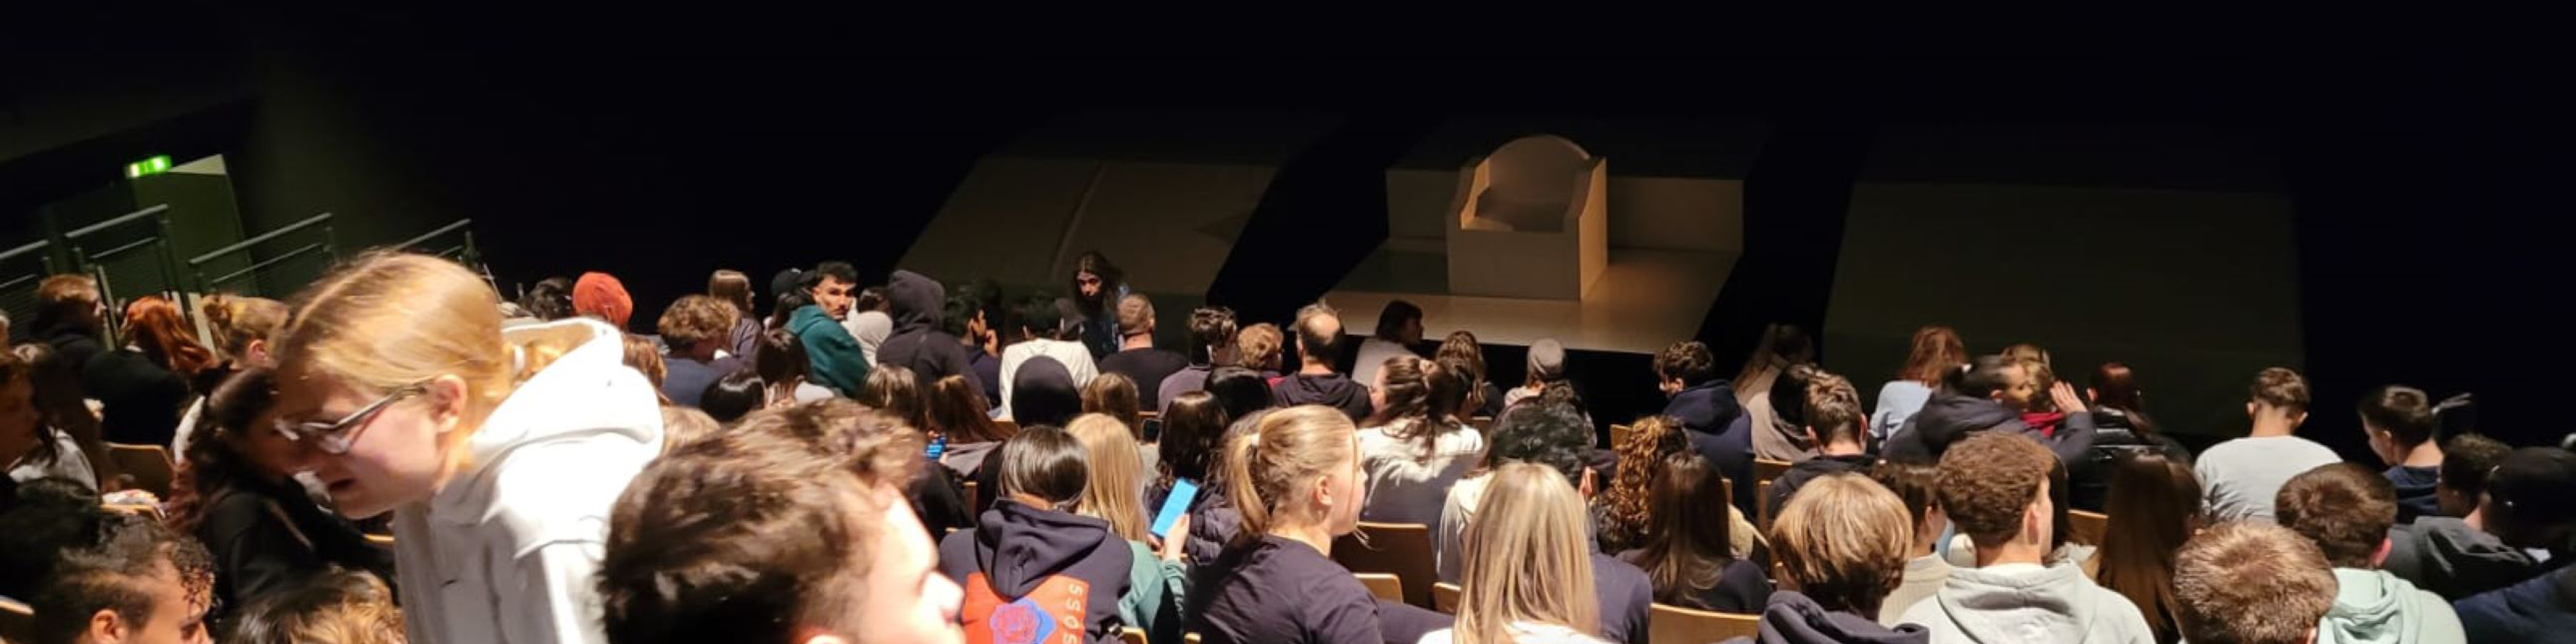 Publikum vor einer Theaterbühne | © Don Bosco Berufsfachschule für Kinderpflege